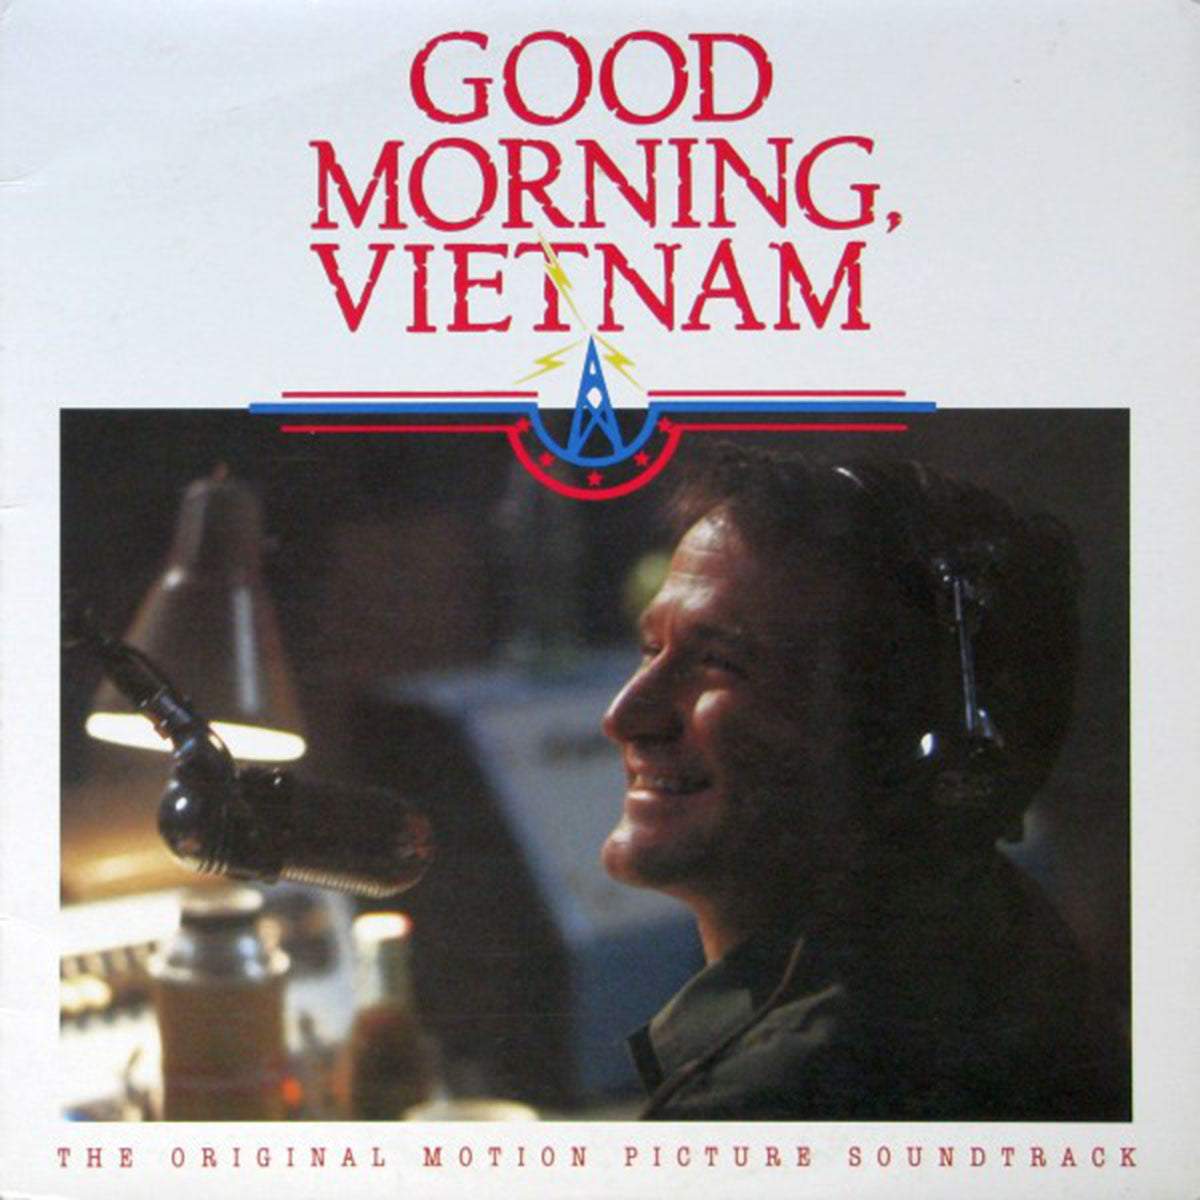 DAILY DEAL! Good Morning Vietnam! Original Soundtrack - 1988 MONO Original!